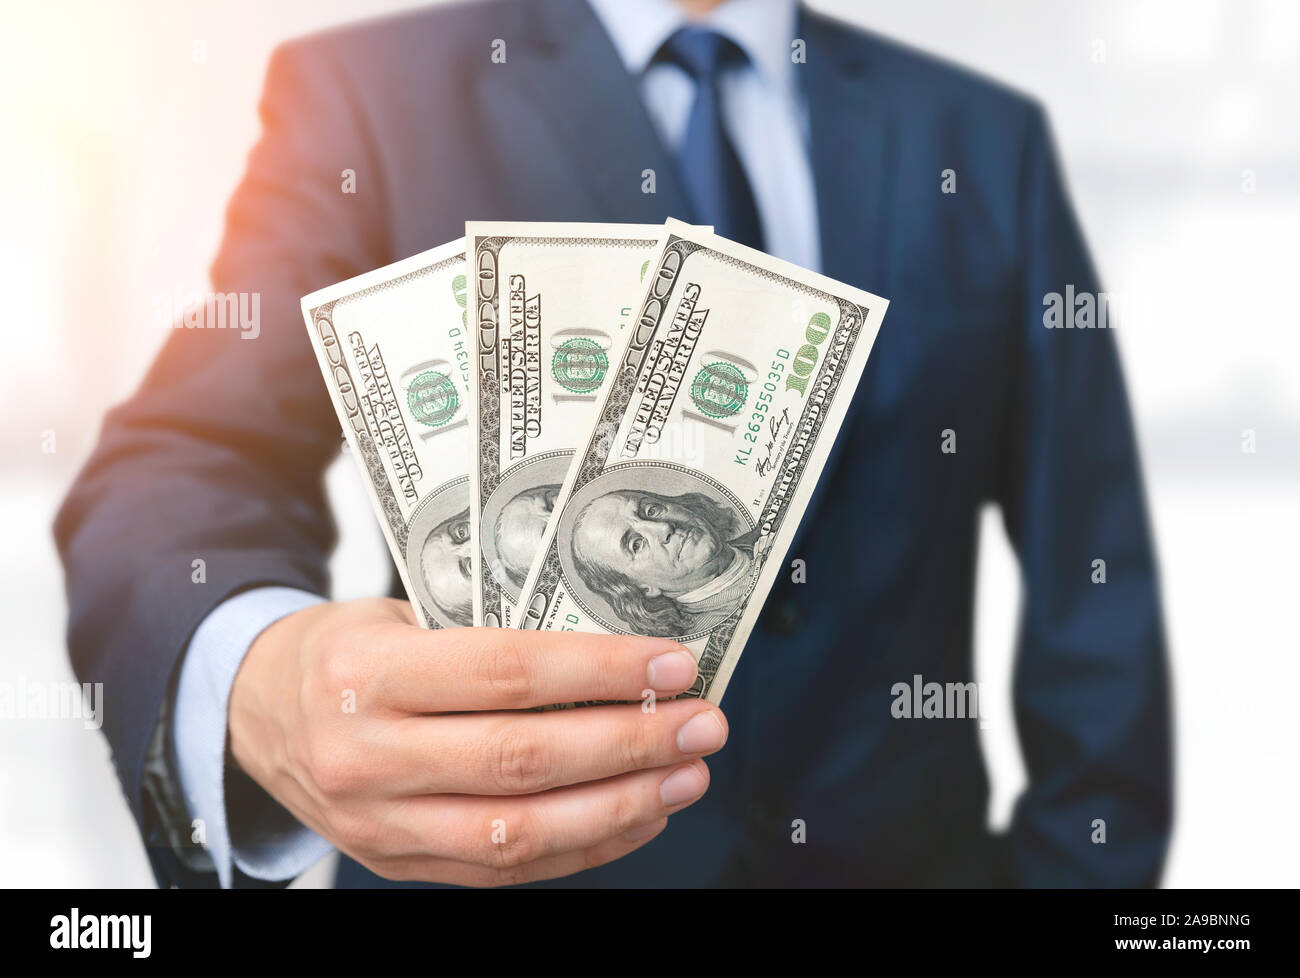 Uomo in una tuta può contenere centinaia di dollari di banconote. Economia, finanza e concetto di stipendio Foto Stock